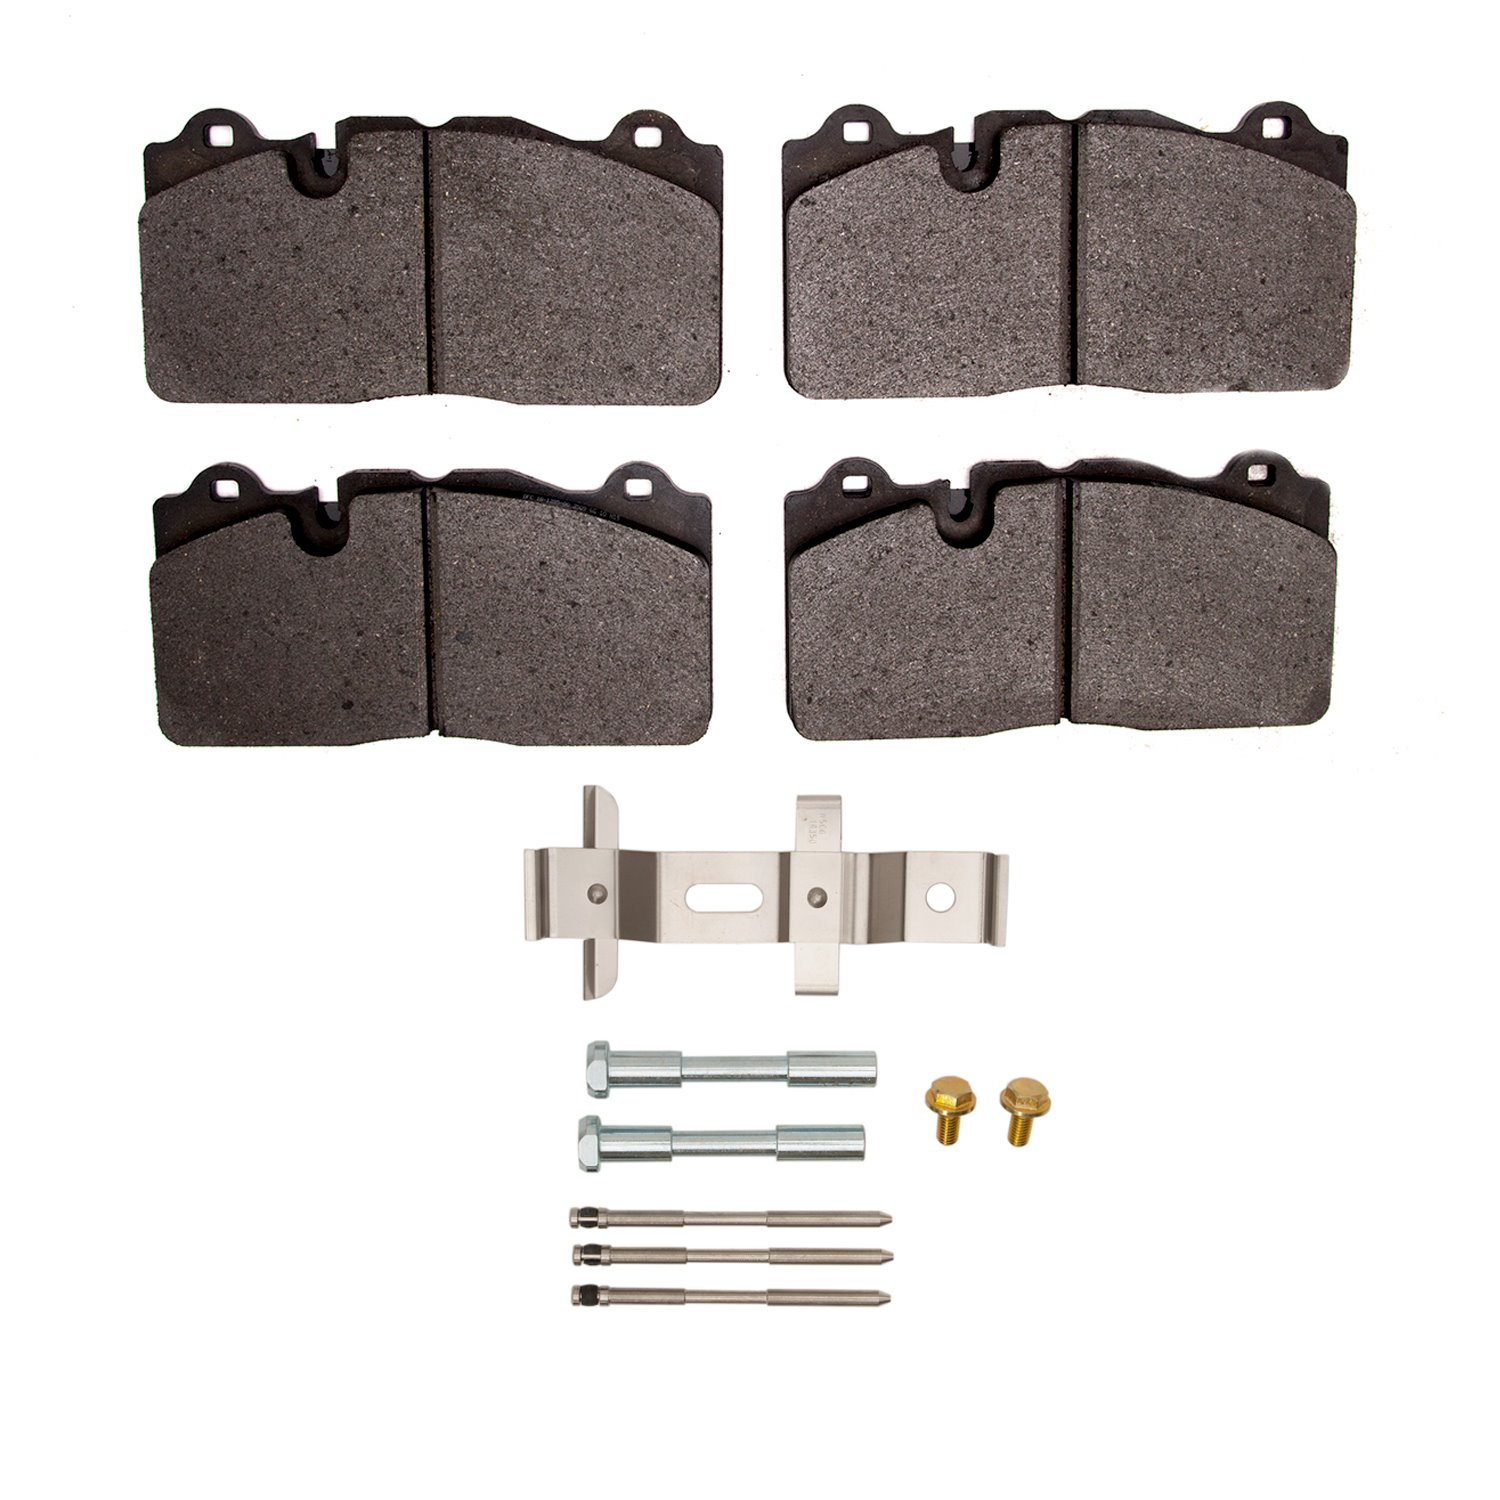 1551-1395-01 5000 Advanced Low-Metallic Brake Pads & Hardware Kit, 2009-2019 GM, Position: Front